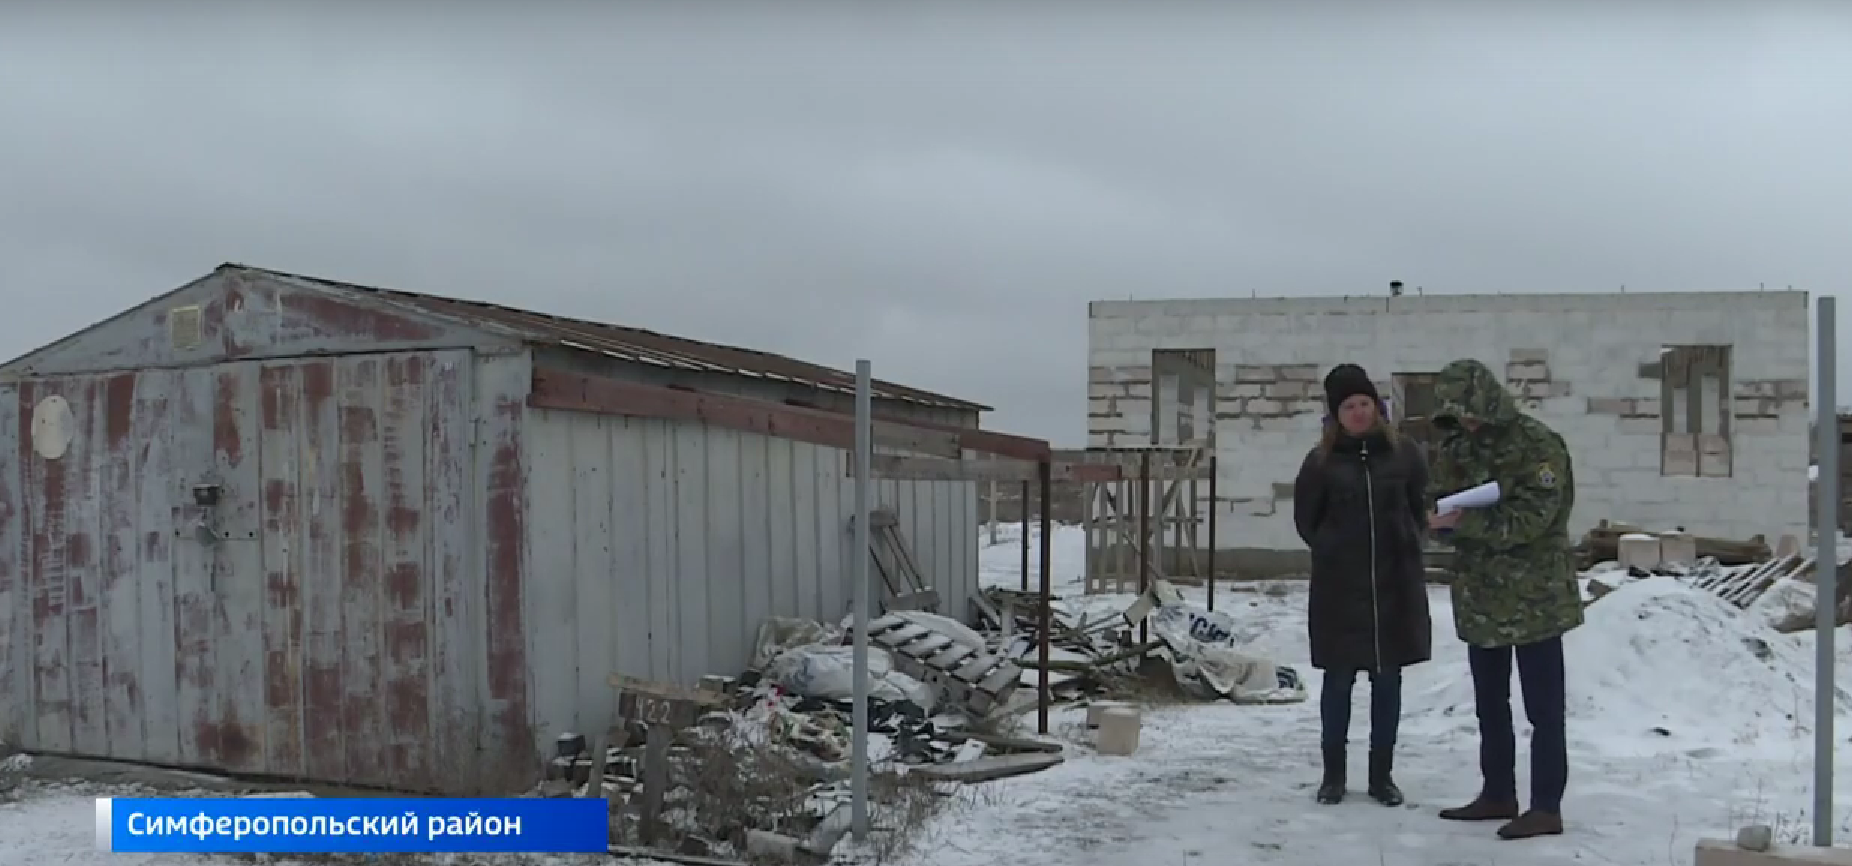 Следком продолжает разбираться, почему многодетной семье из Крыма выдали непригодный для проживания земельный участок